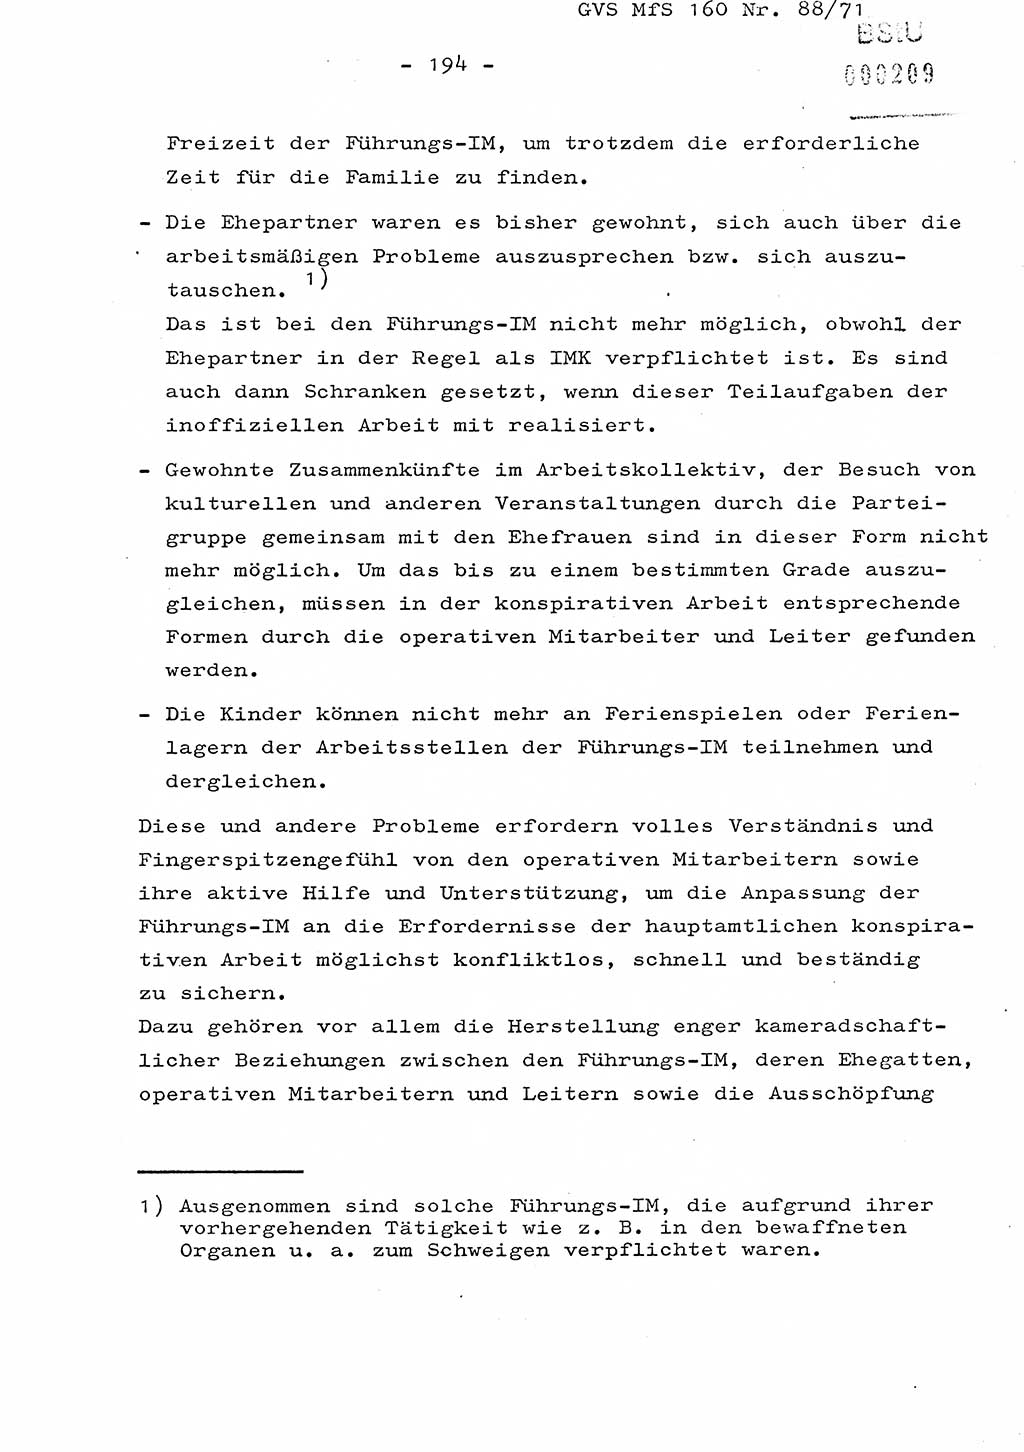 Dissertation Oberstleutnant Josef Schwarz (BV Schwerin), Major Fritz Amm (JHS), Hauptmann Peter Gräßler (JHS), Ministerium für Staatssicherheit (MfS) [Deutsche Demokratische Republik (DDR)], Juristische Hochschule (JHS), Geheime Verschlußsache (GVS) 160-88/71, Potsdam 1972, Seite 194 (Diss. MfS DDR JHS GVS 160-88/71 1972, S. 194)